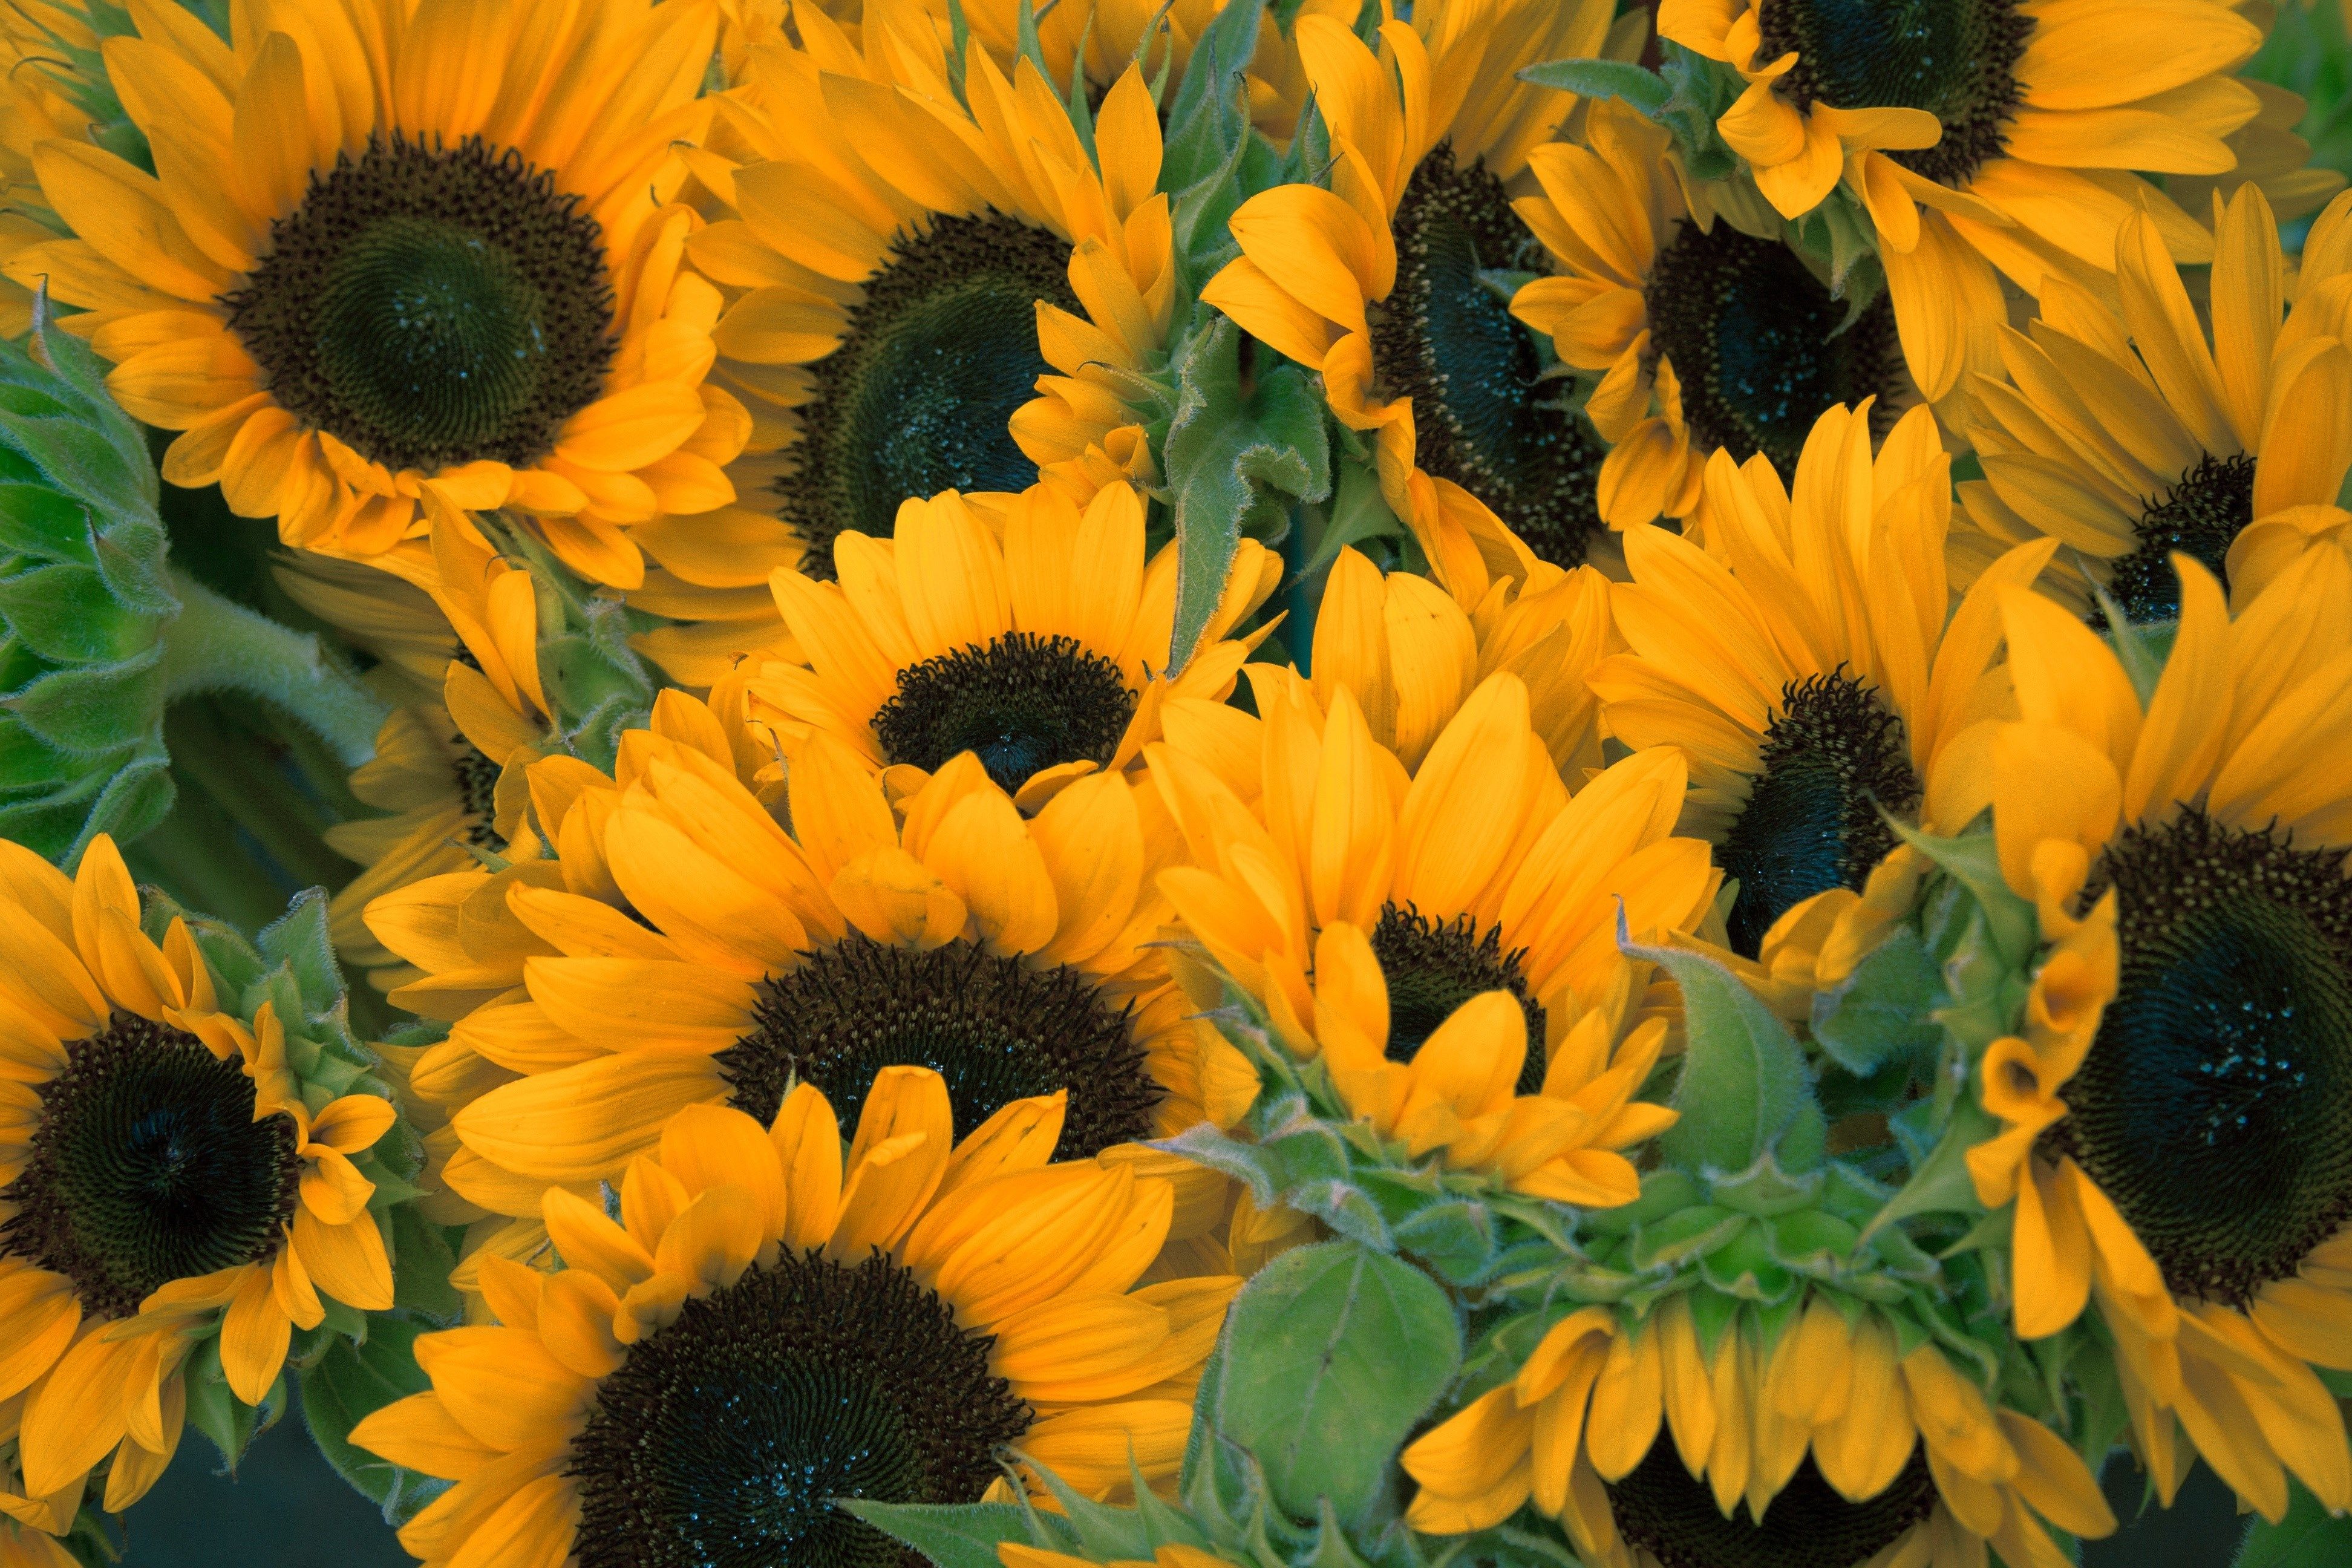 Harald Round - sunflower background desktop free - 3888x2592 px ...